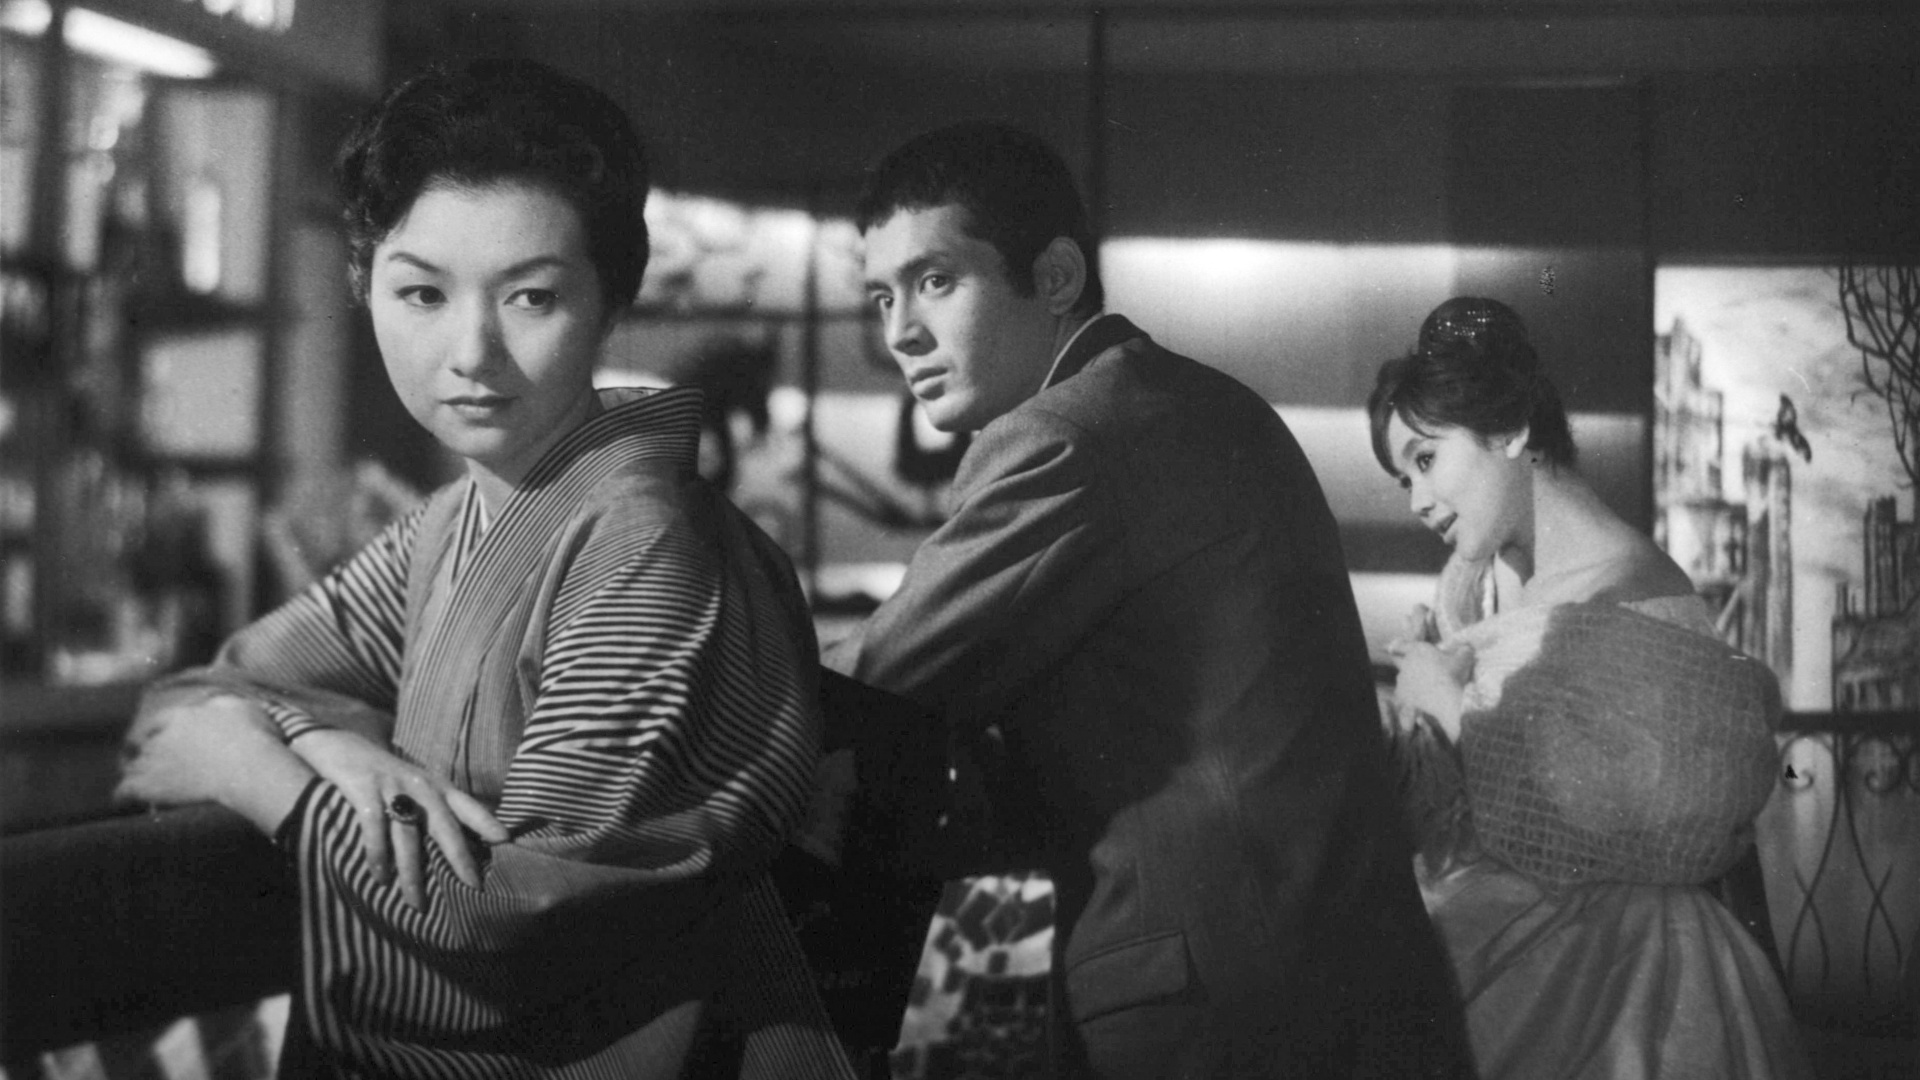 Filmstill aus dem Schwarz-Weiß-Film Nippon. Ein Mann schaut eine Frau an, die sich aber von ihm wegdreht. Eine weitere Frau sitzt im Hintergrund.